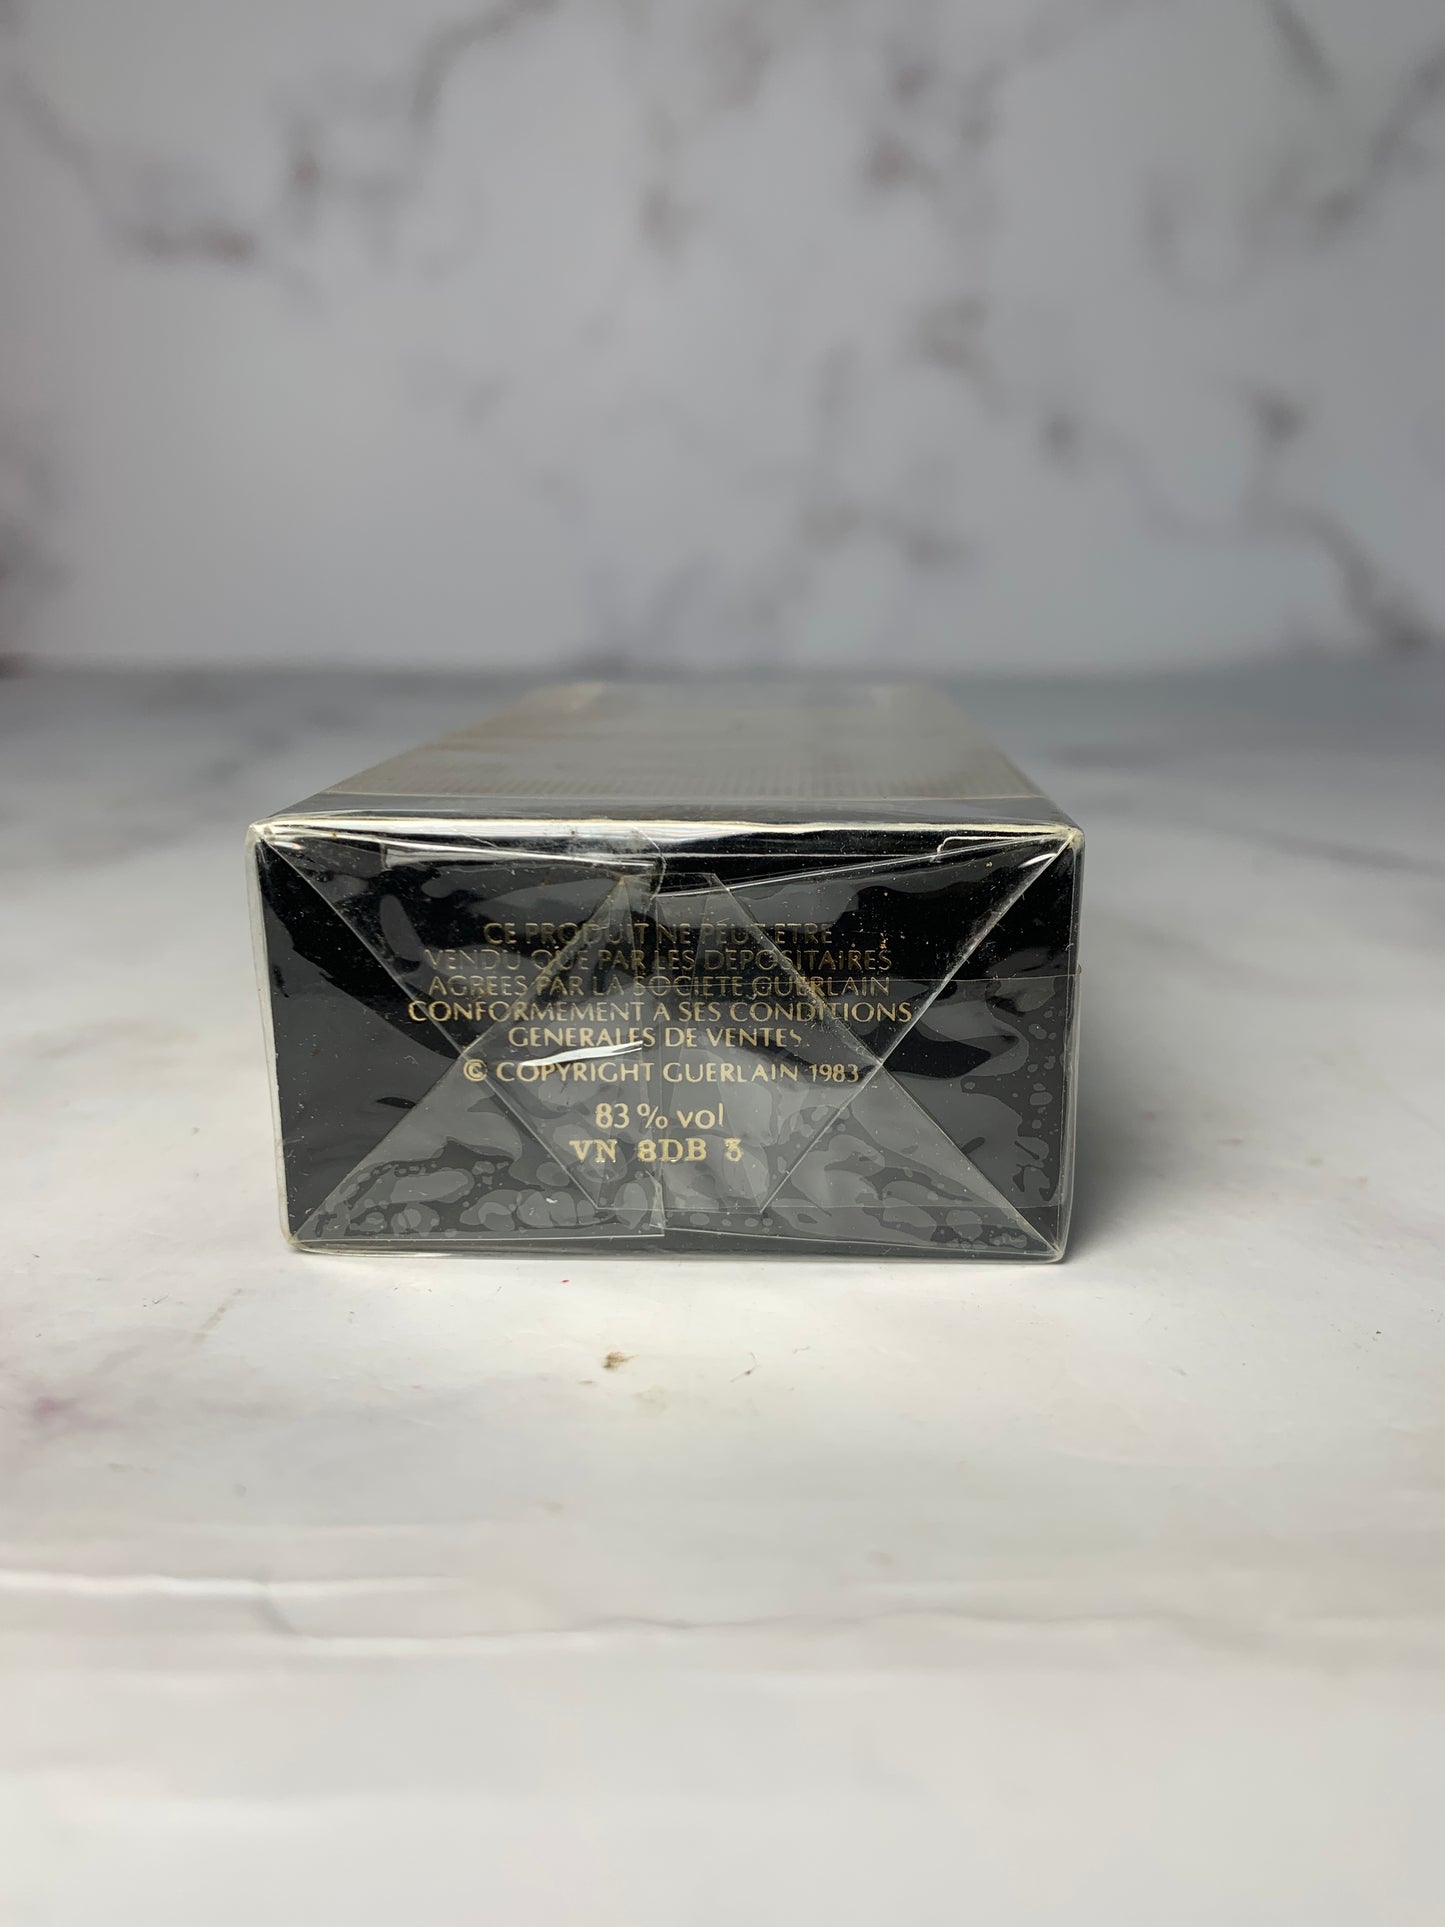 Rare Sealed Guerlain mitsouko 7.5 ml 1/4 oz with box - 030124